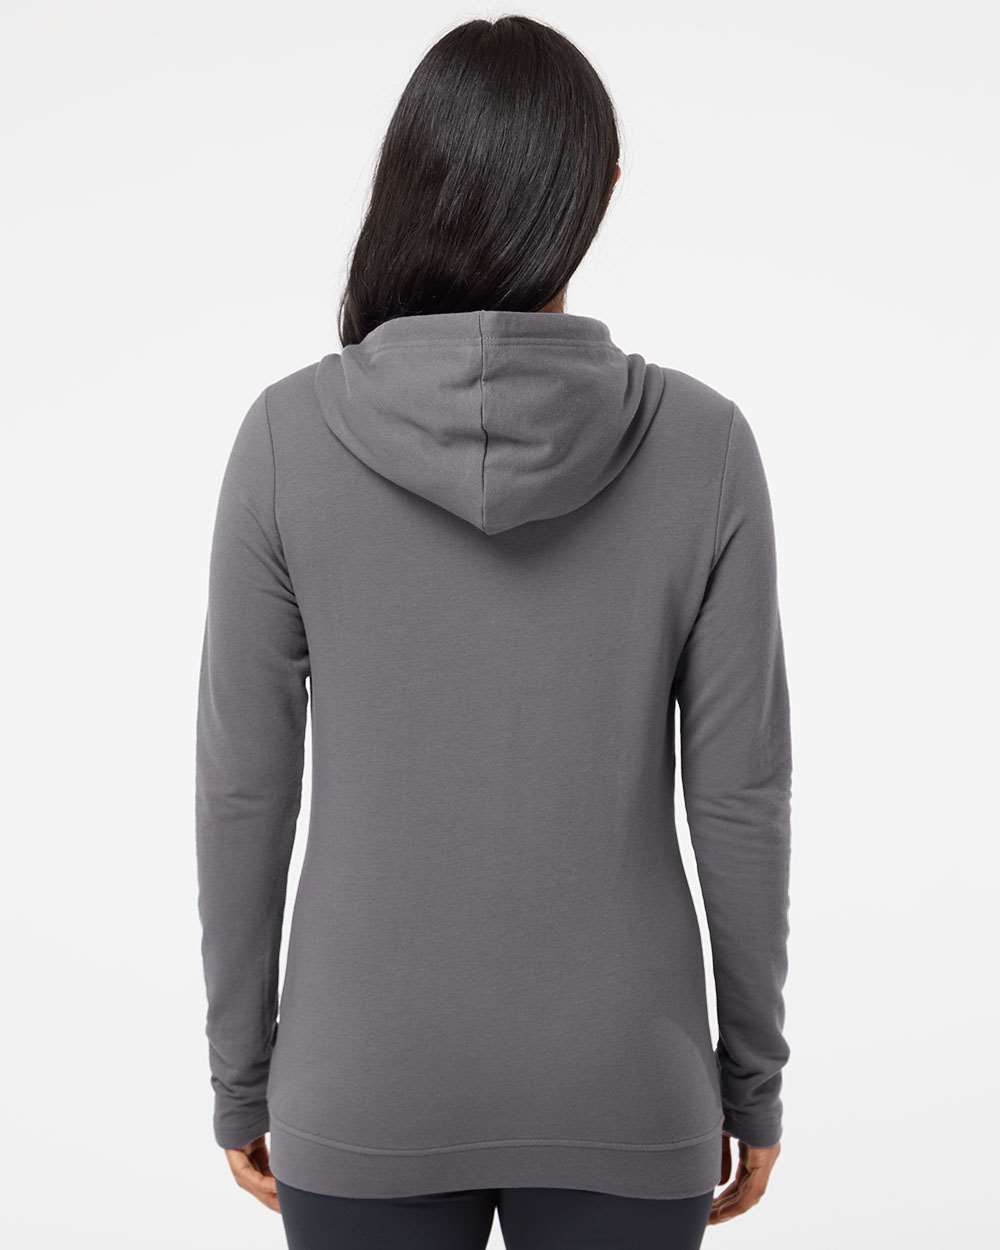 Adidas - Women's Lightweight Hooded Sweatshirt - A451